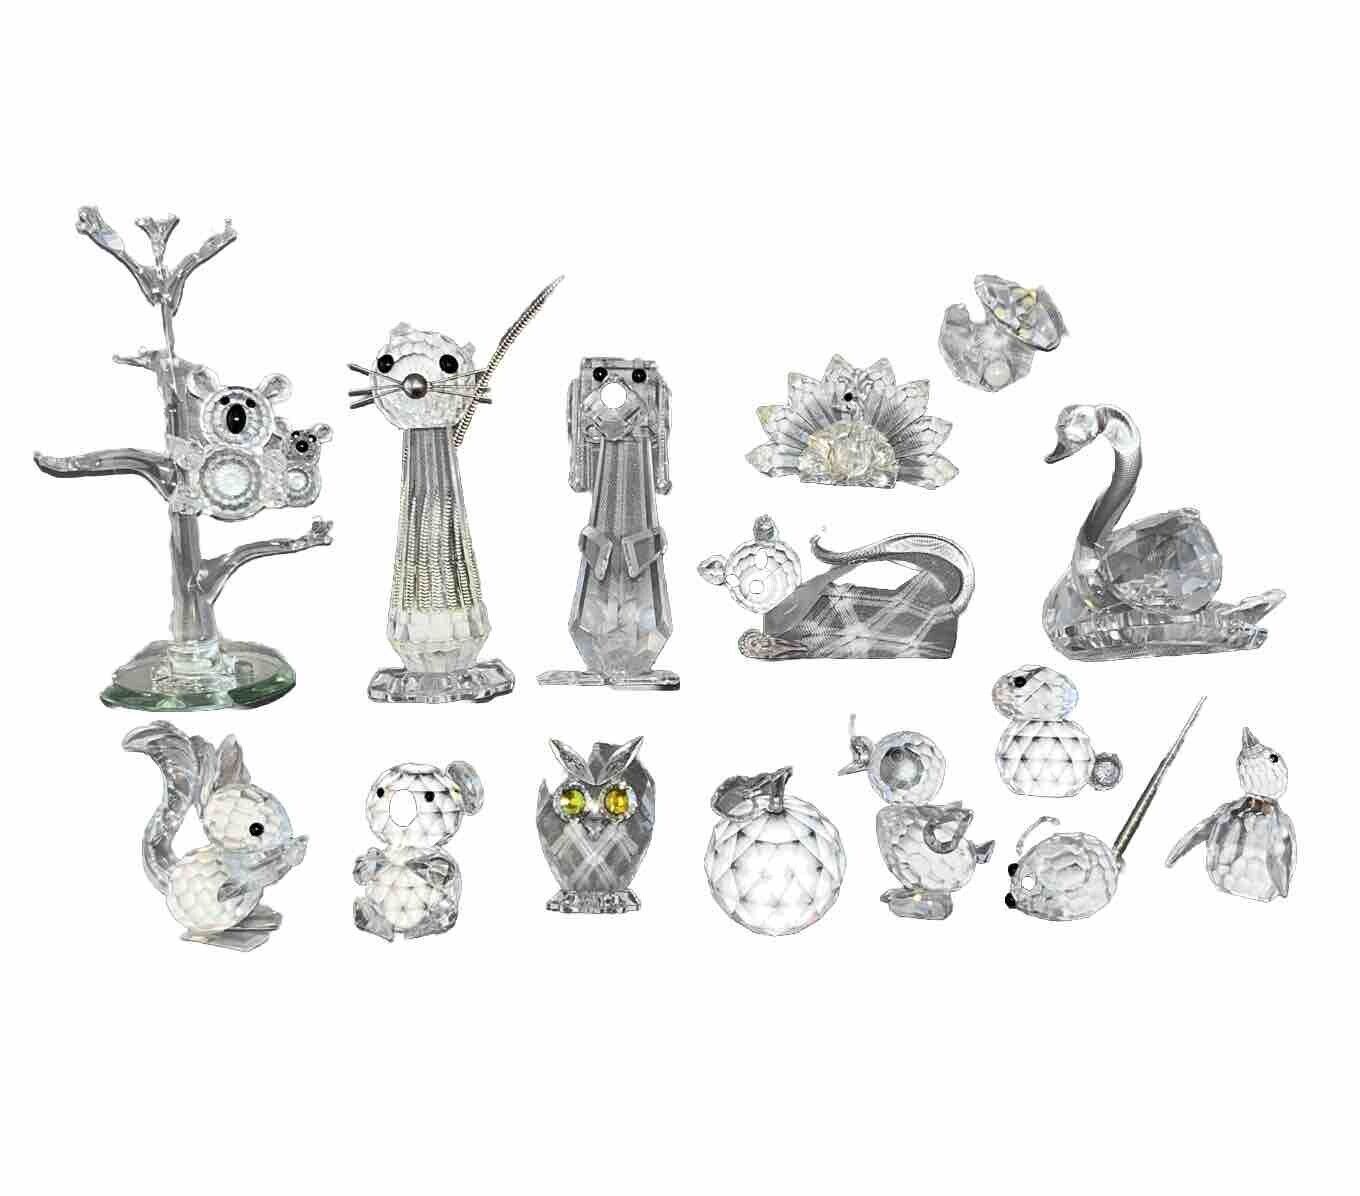 Lot of Vintage Swarovski Crystal FigurinesRetired Squirrel, Cat, Dog, Duck Etc